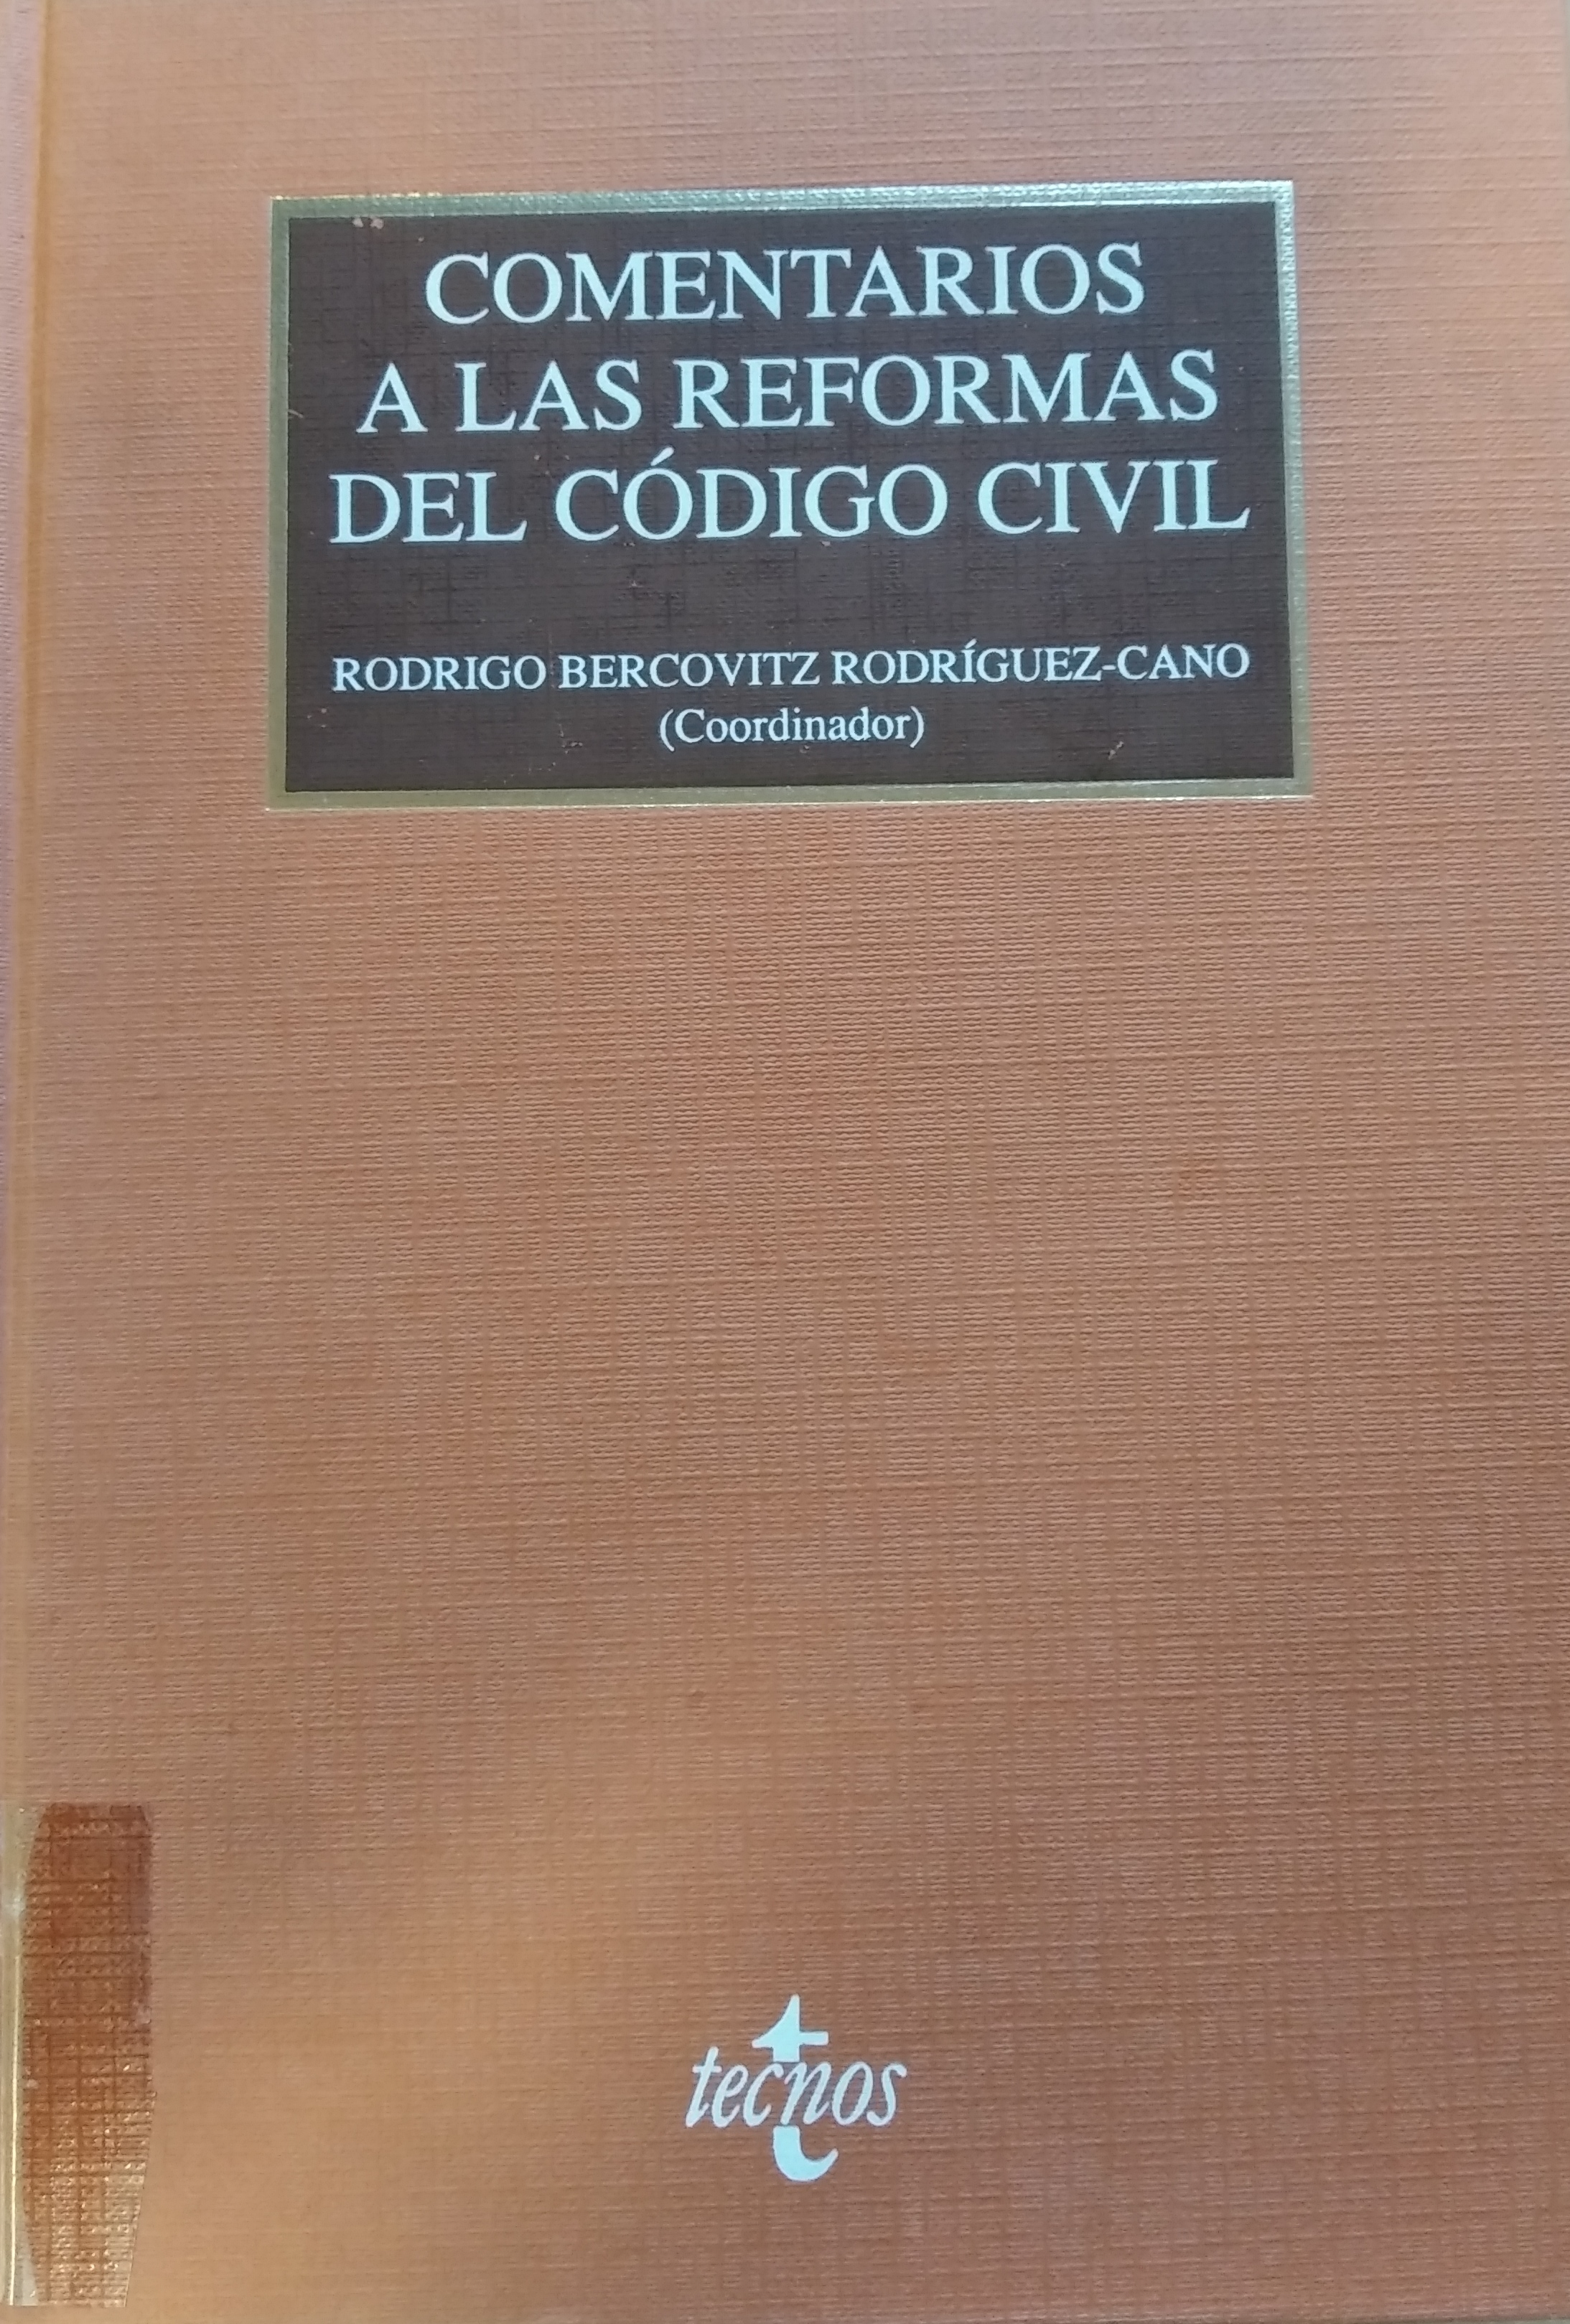 Imagen de portada del libro Comentarios a las reformas del Código Civil